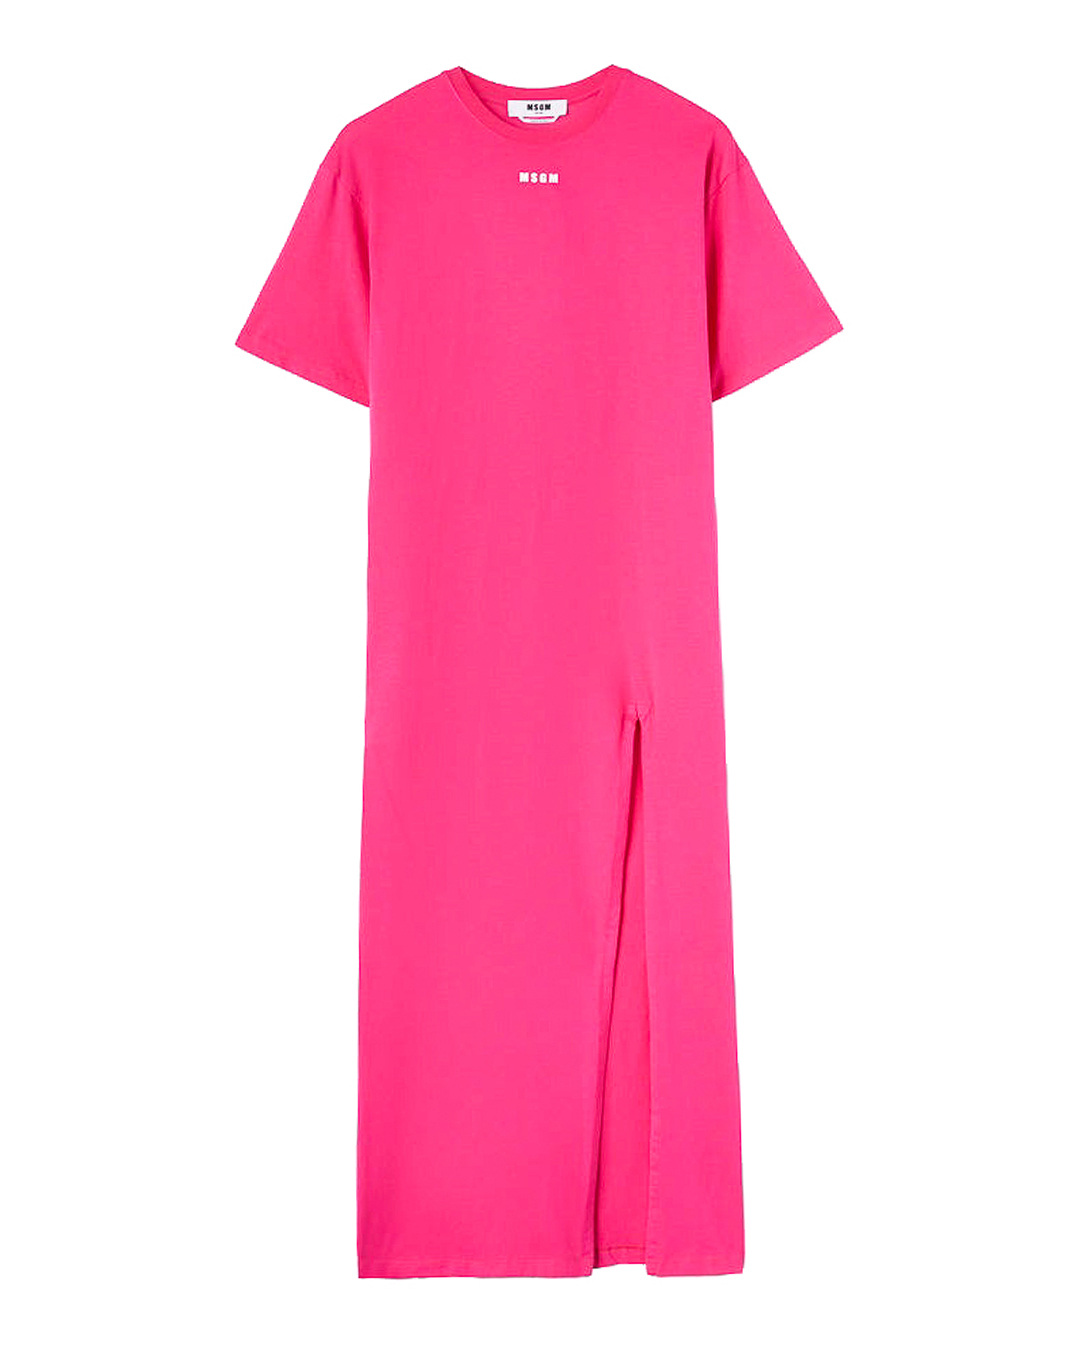 платье MSGM 3641MDA83 розовый l, размер l - фото 1